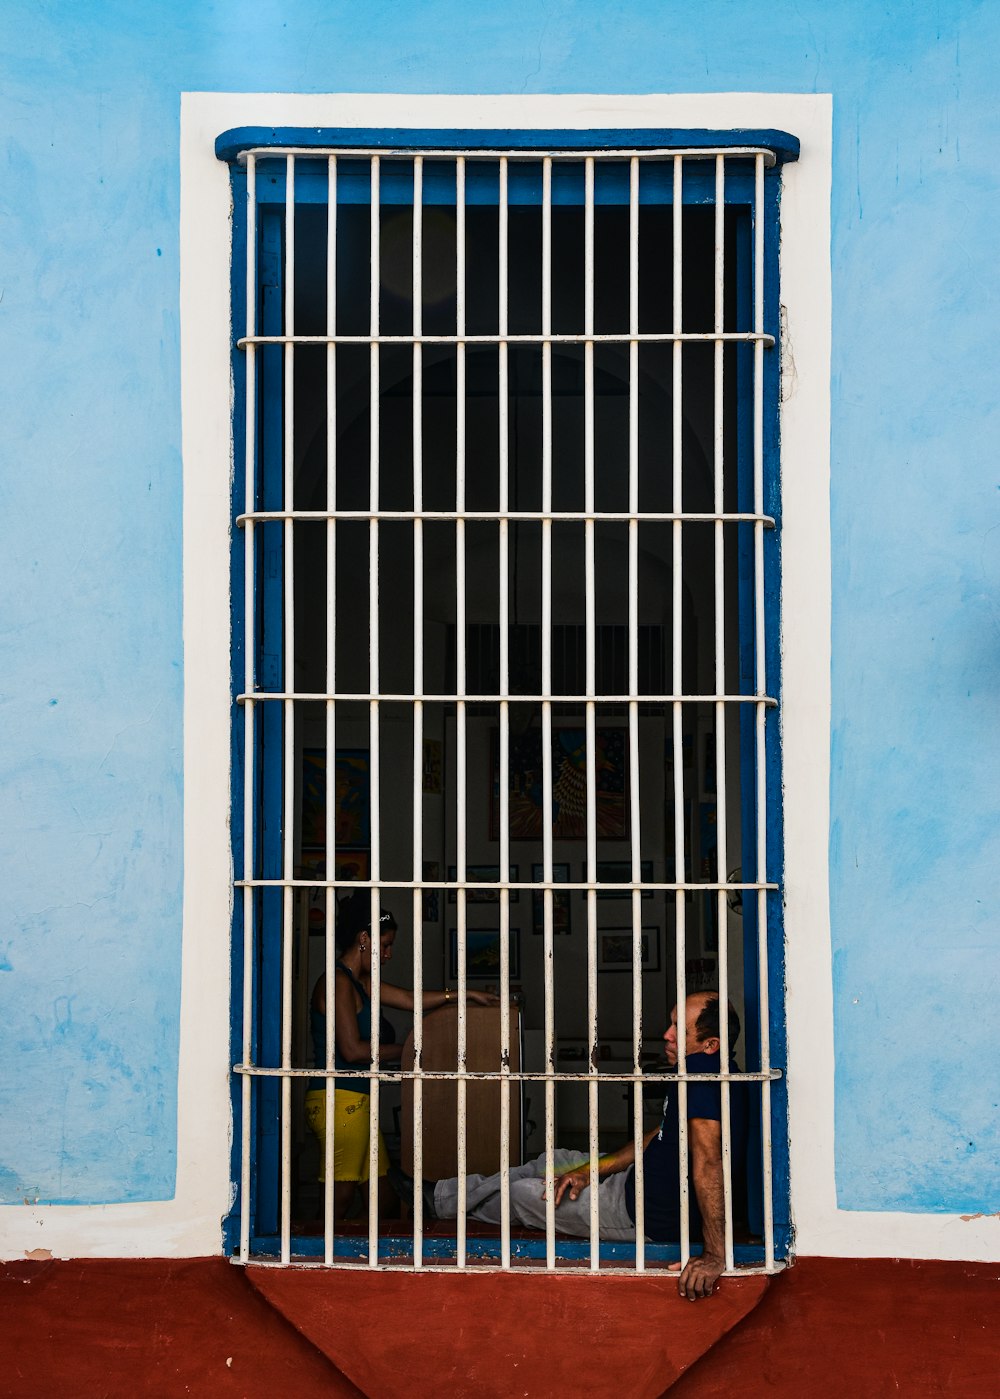 Un hombre sentado en una celda de la cárcel tras las rejas